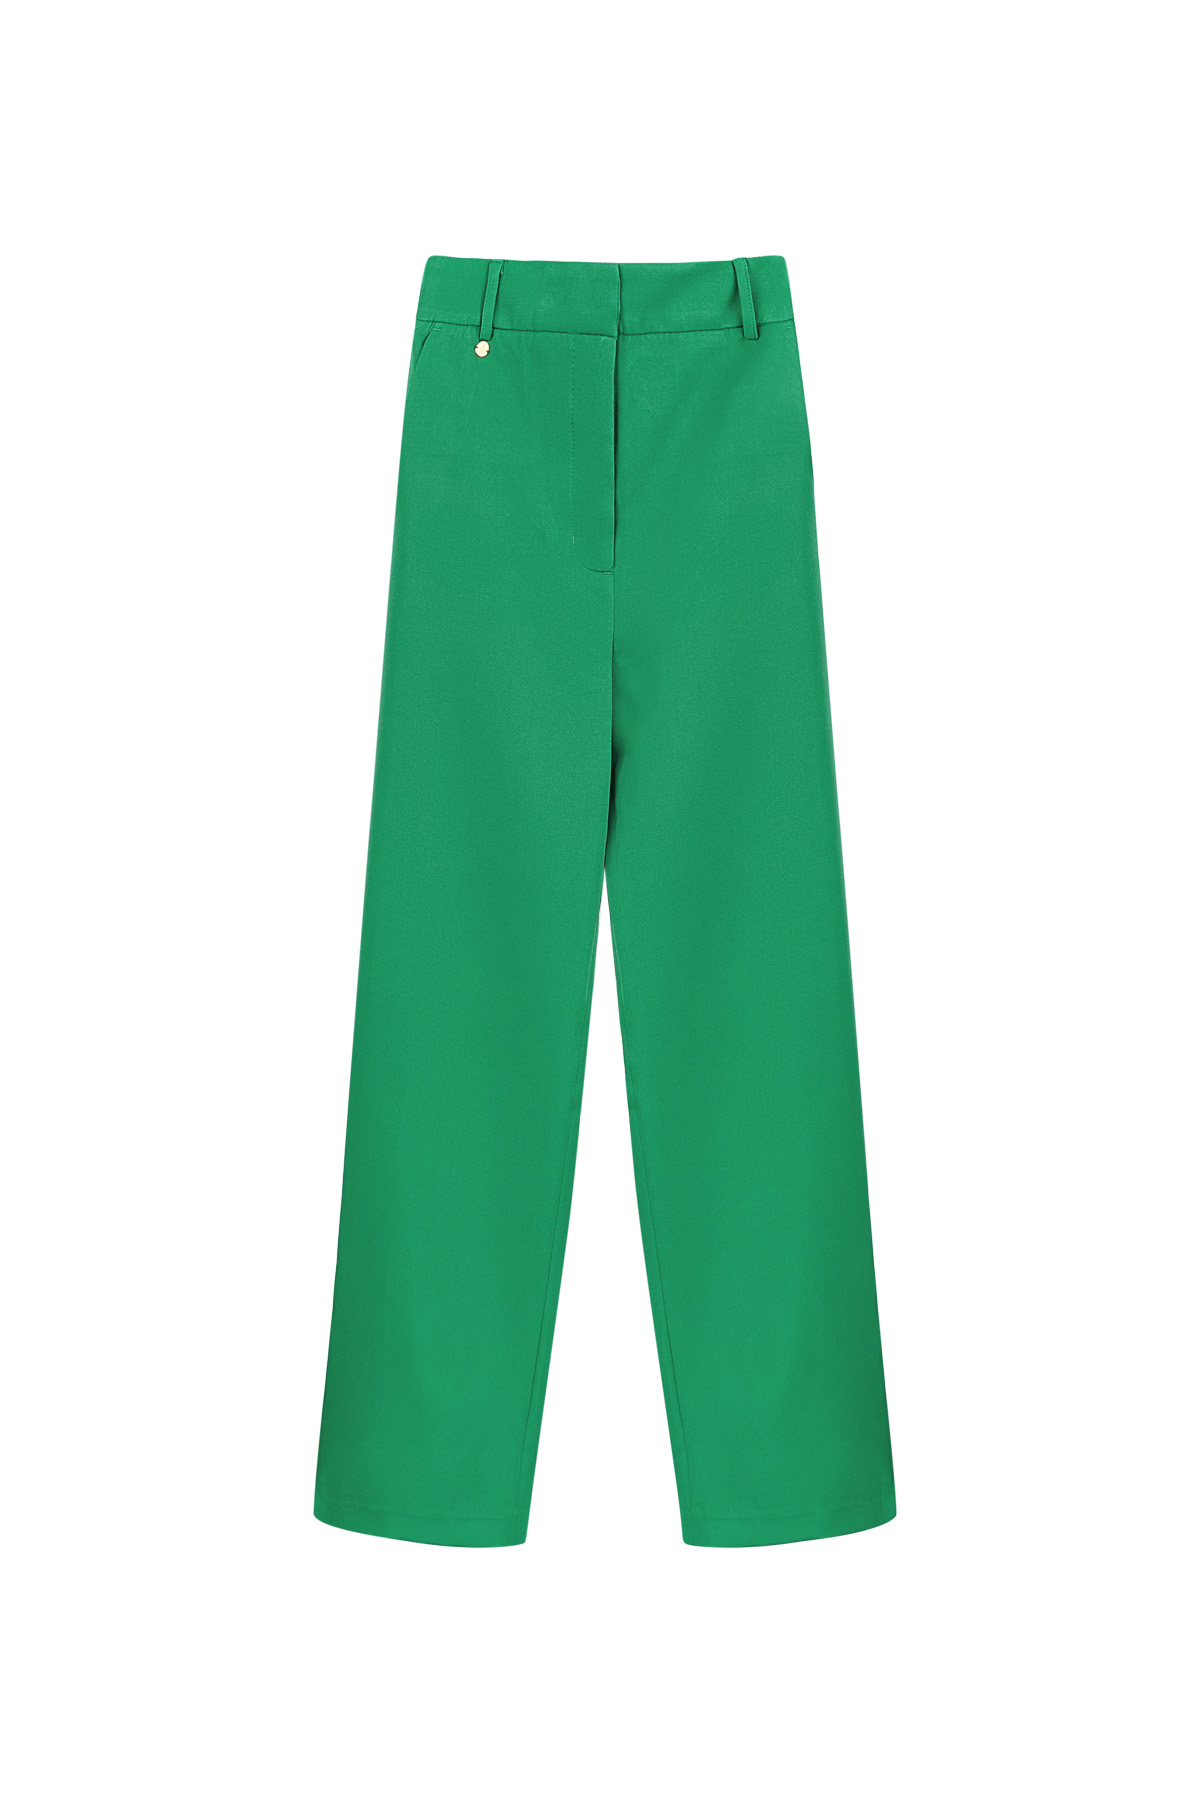 Pileli pantolon - yeşil 